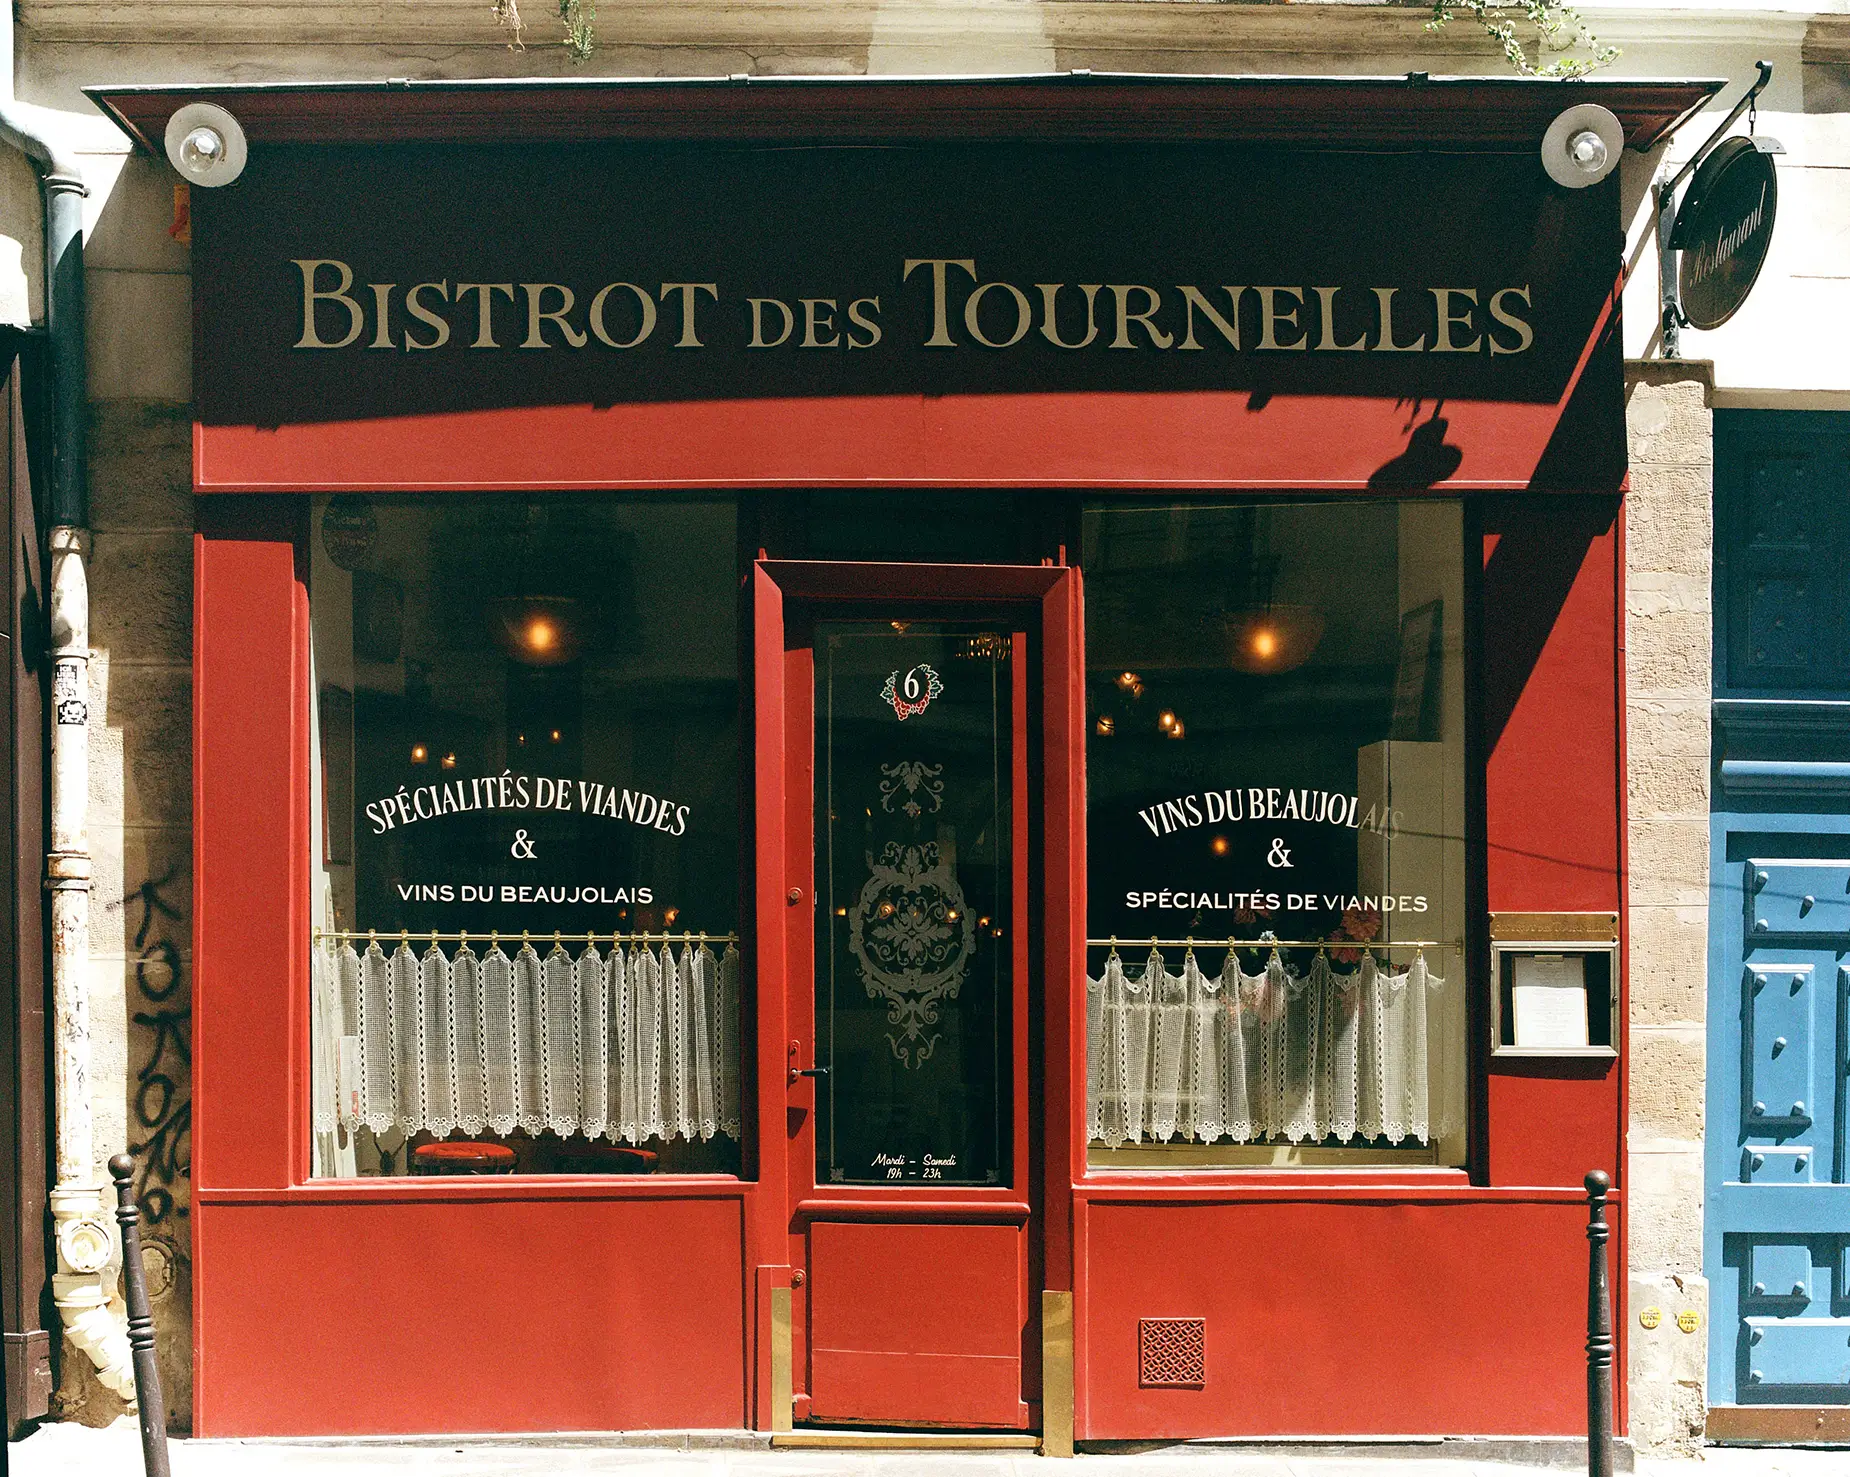 he vibrant red facade of Bistrot Des Tournelles in Paris, with a sign advertising 'Vins du Beaujolais' and 'Spécialités de Viandes.